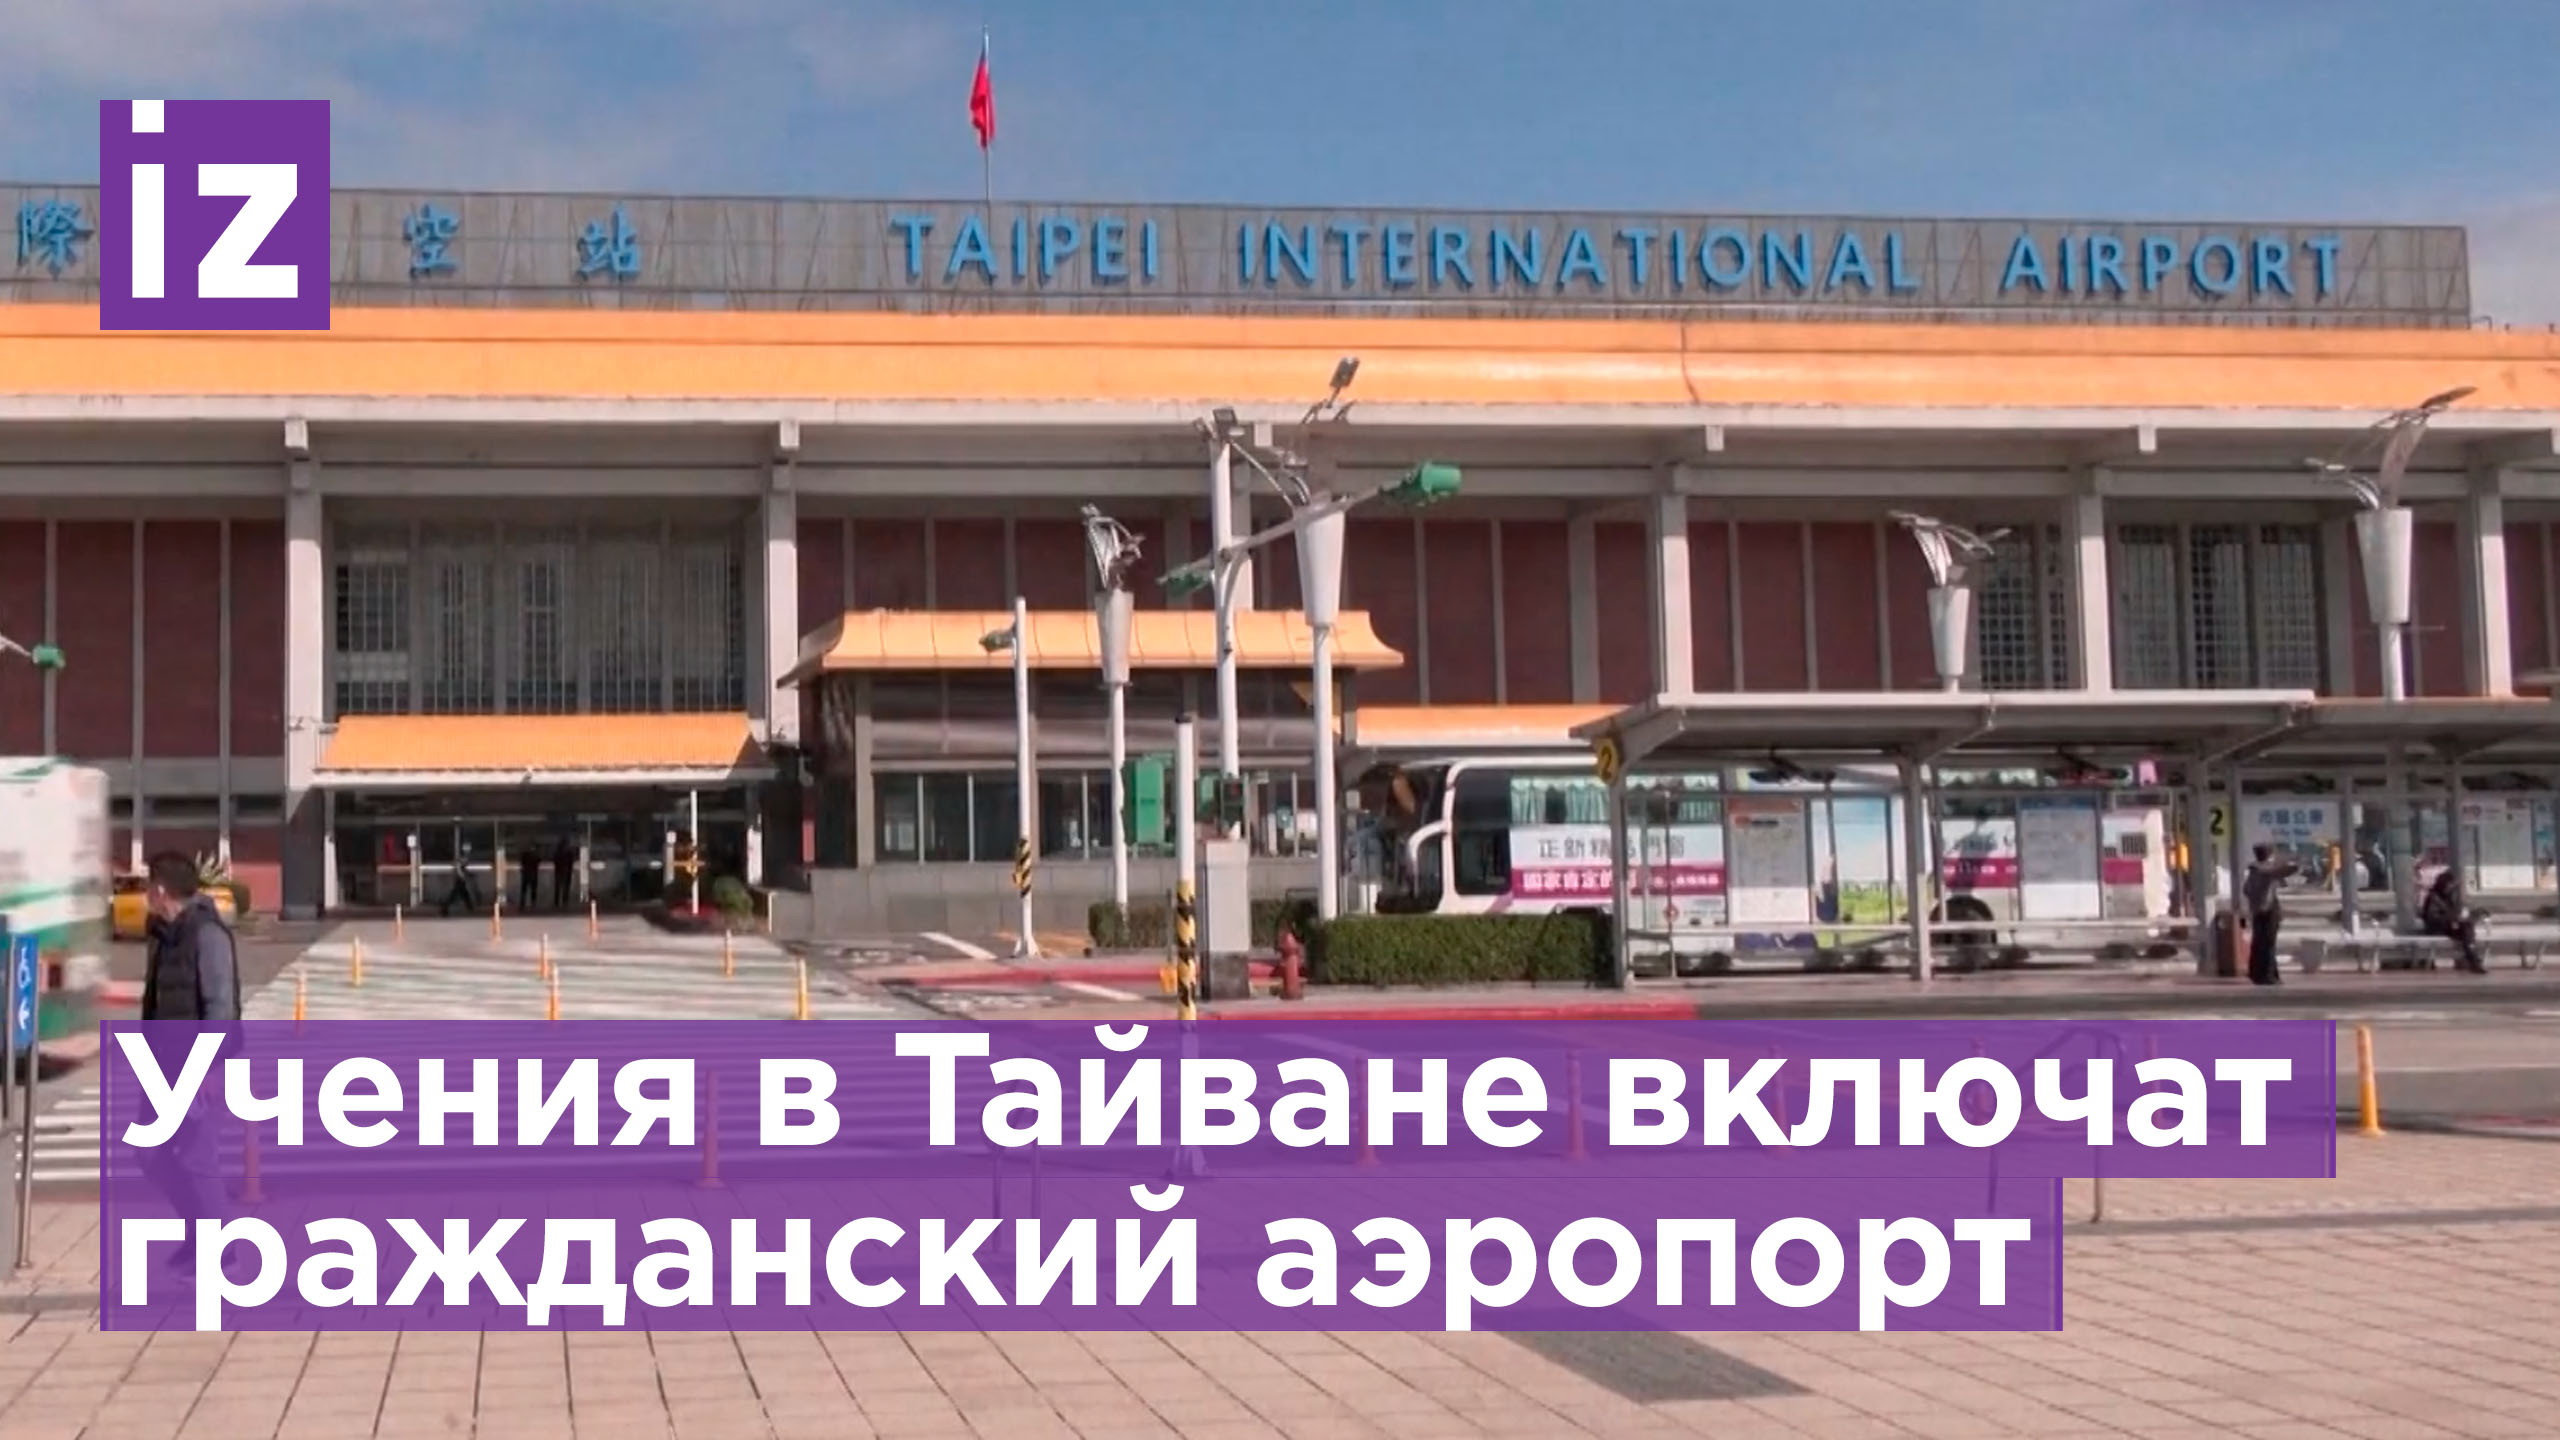 Главный аэропорт Тайваня планируют задействовать в военных учениях / Известия